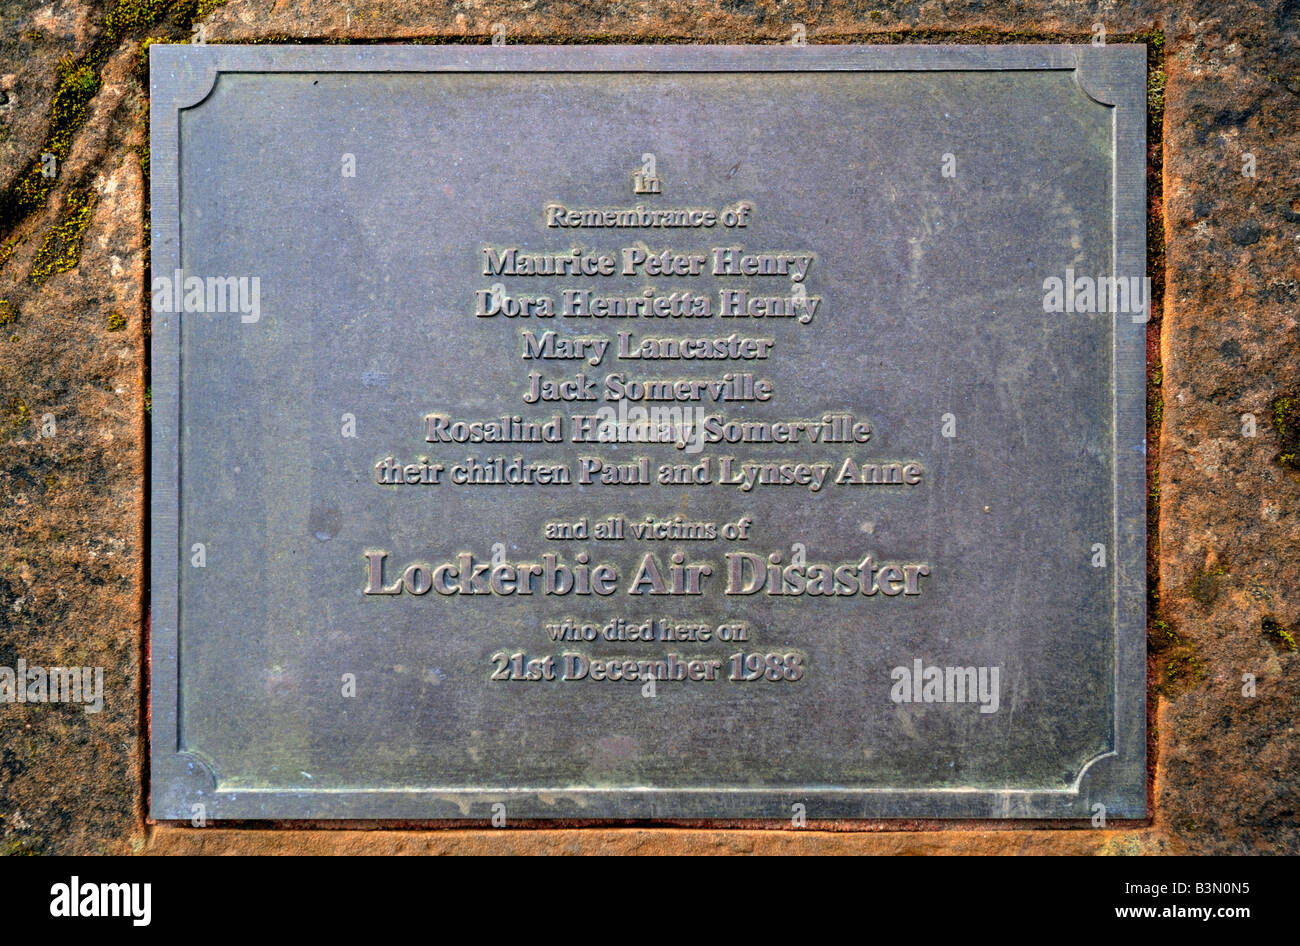 Gedenktafel Am Denkmal Fur Die Katastrophe Von Lockerbie Luft